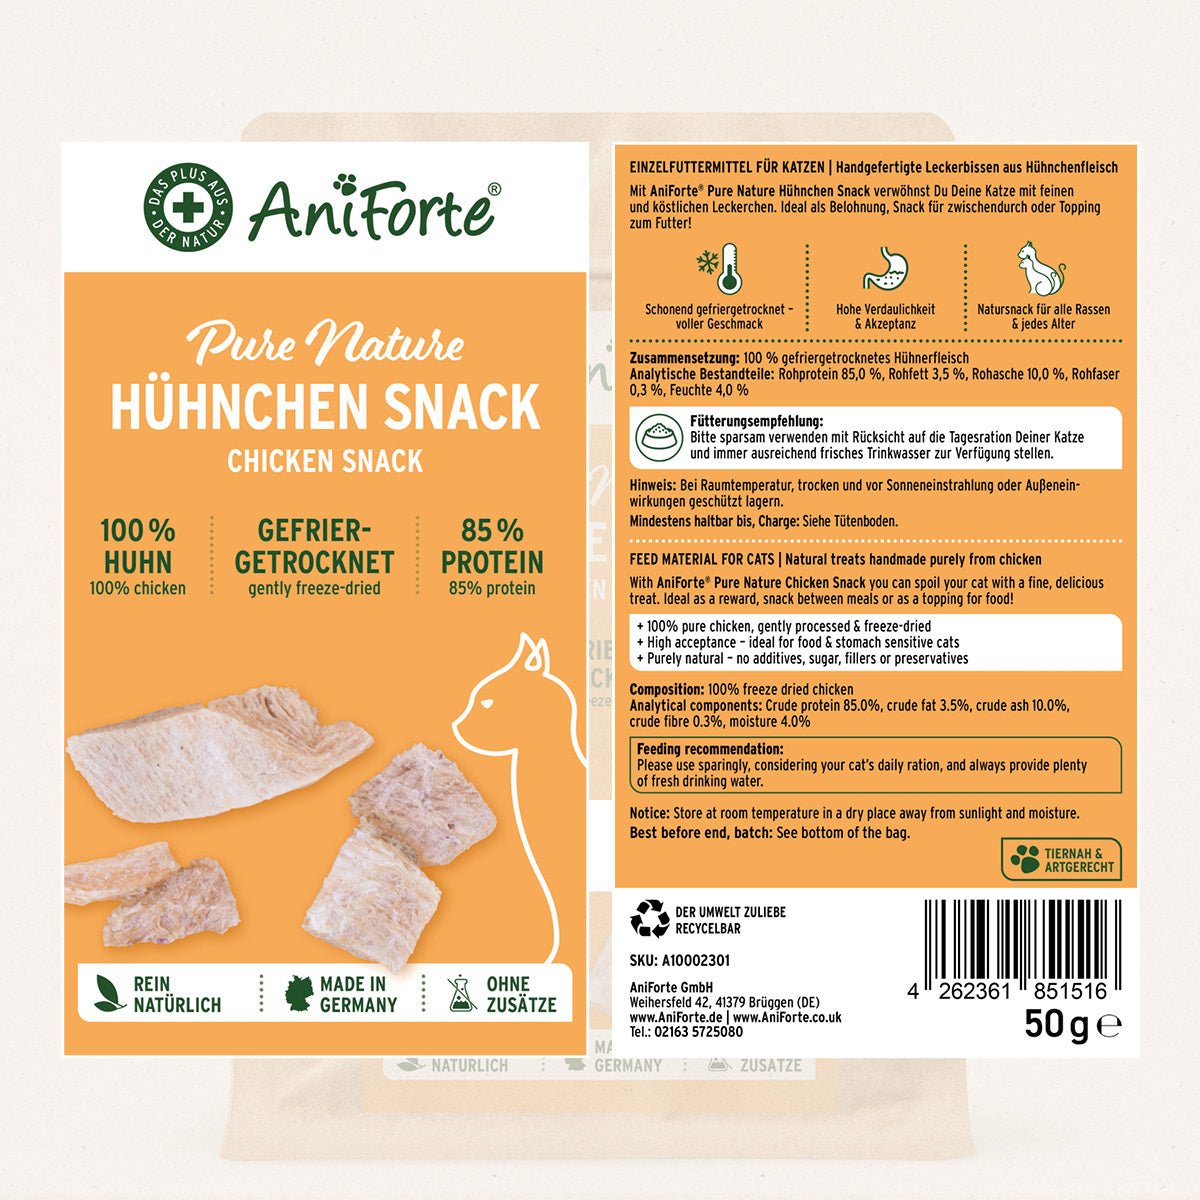 Hühnchen Snack Inhaltsstoffe und Fütterungsempfehlung auf einen Blick - AniForte